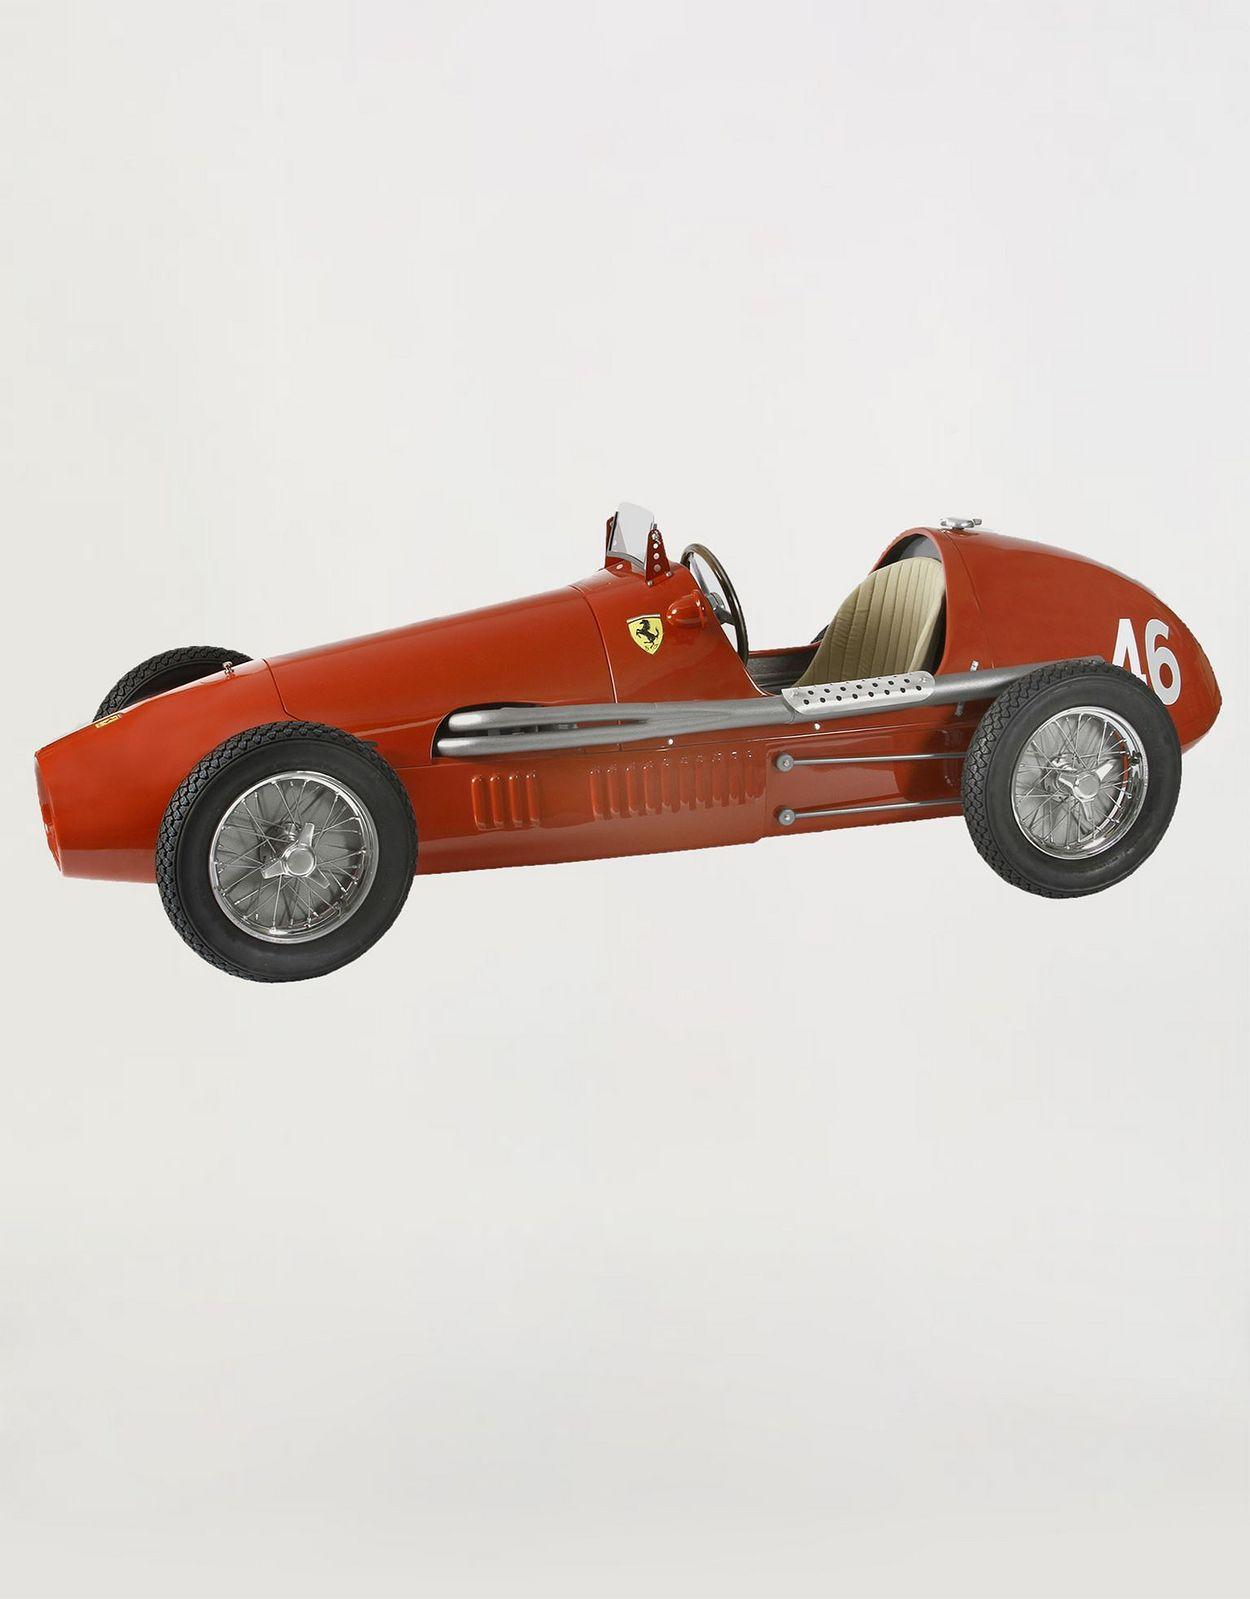 Ferrari 500 F2 1:1.8 scale reproduction